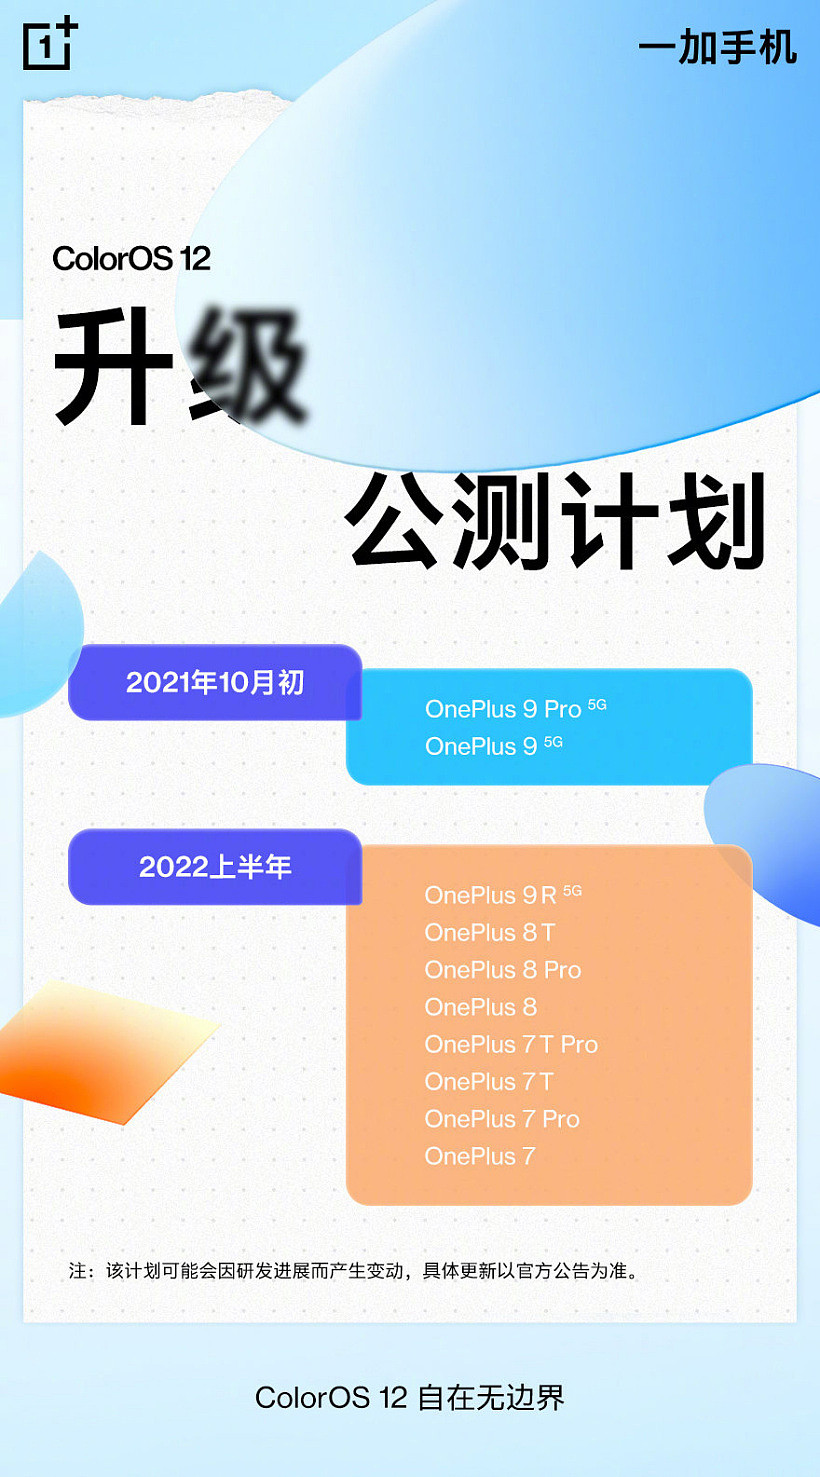 一加手机 COO 刘丰硕：机型 ColorOS 12 适配会按照产品基线有序进行 - 1